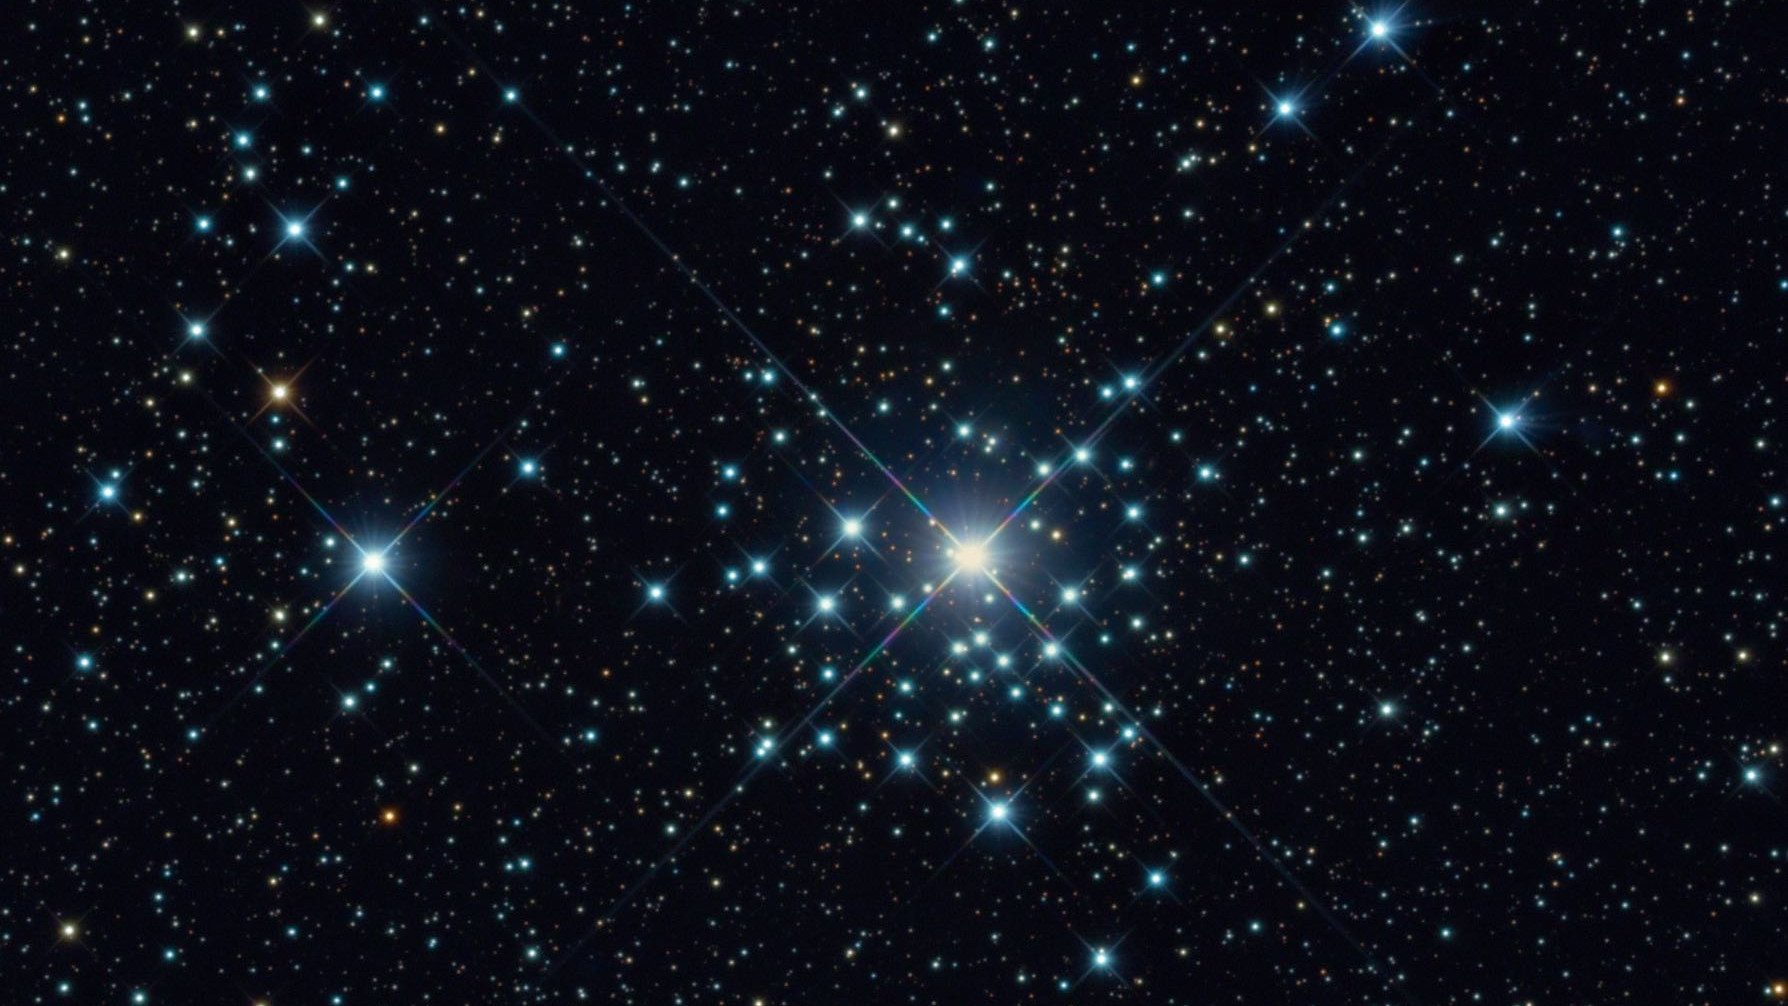 L’amas d’étoiles NGC 2362 dans la constellation du Grand Chien, photographié avec un télescope de 20 pouces, à une distance focale de 4 492 mm. Bernhard Hubl et l’équipe CEDIC / CCD Guide